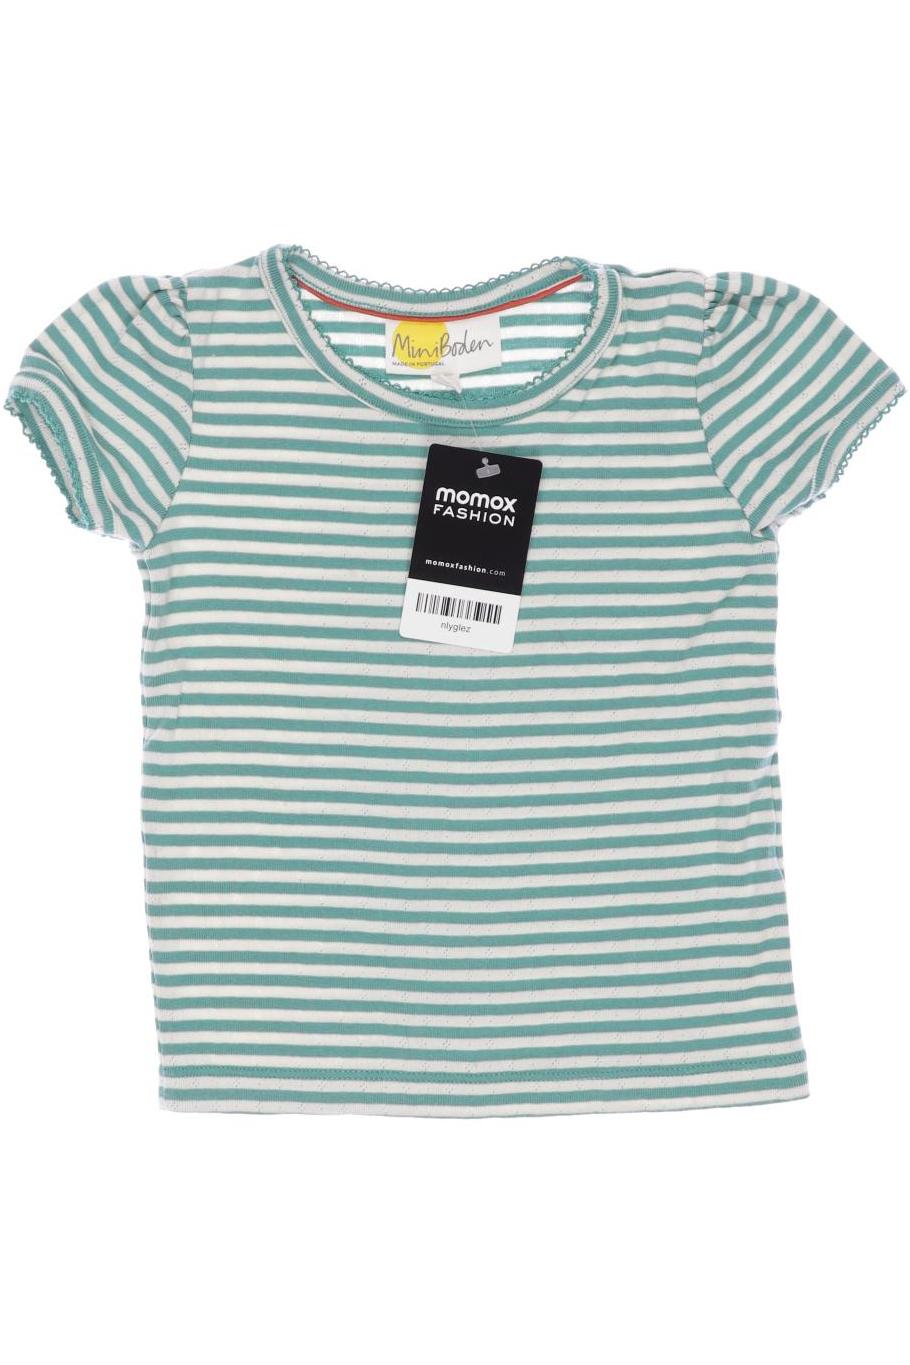 Mini Boden Damen T-Shirt, türkis, Gr. 110 von Mini Boden